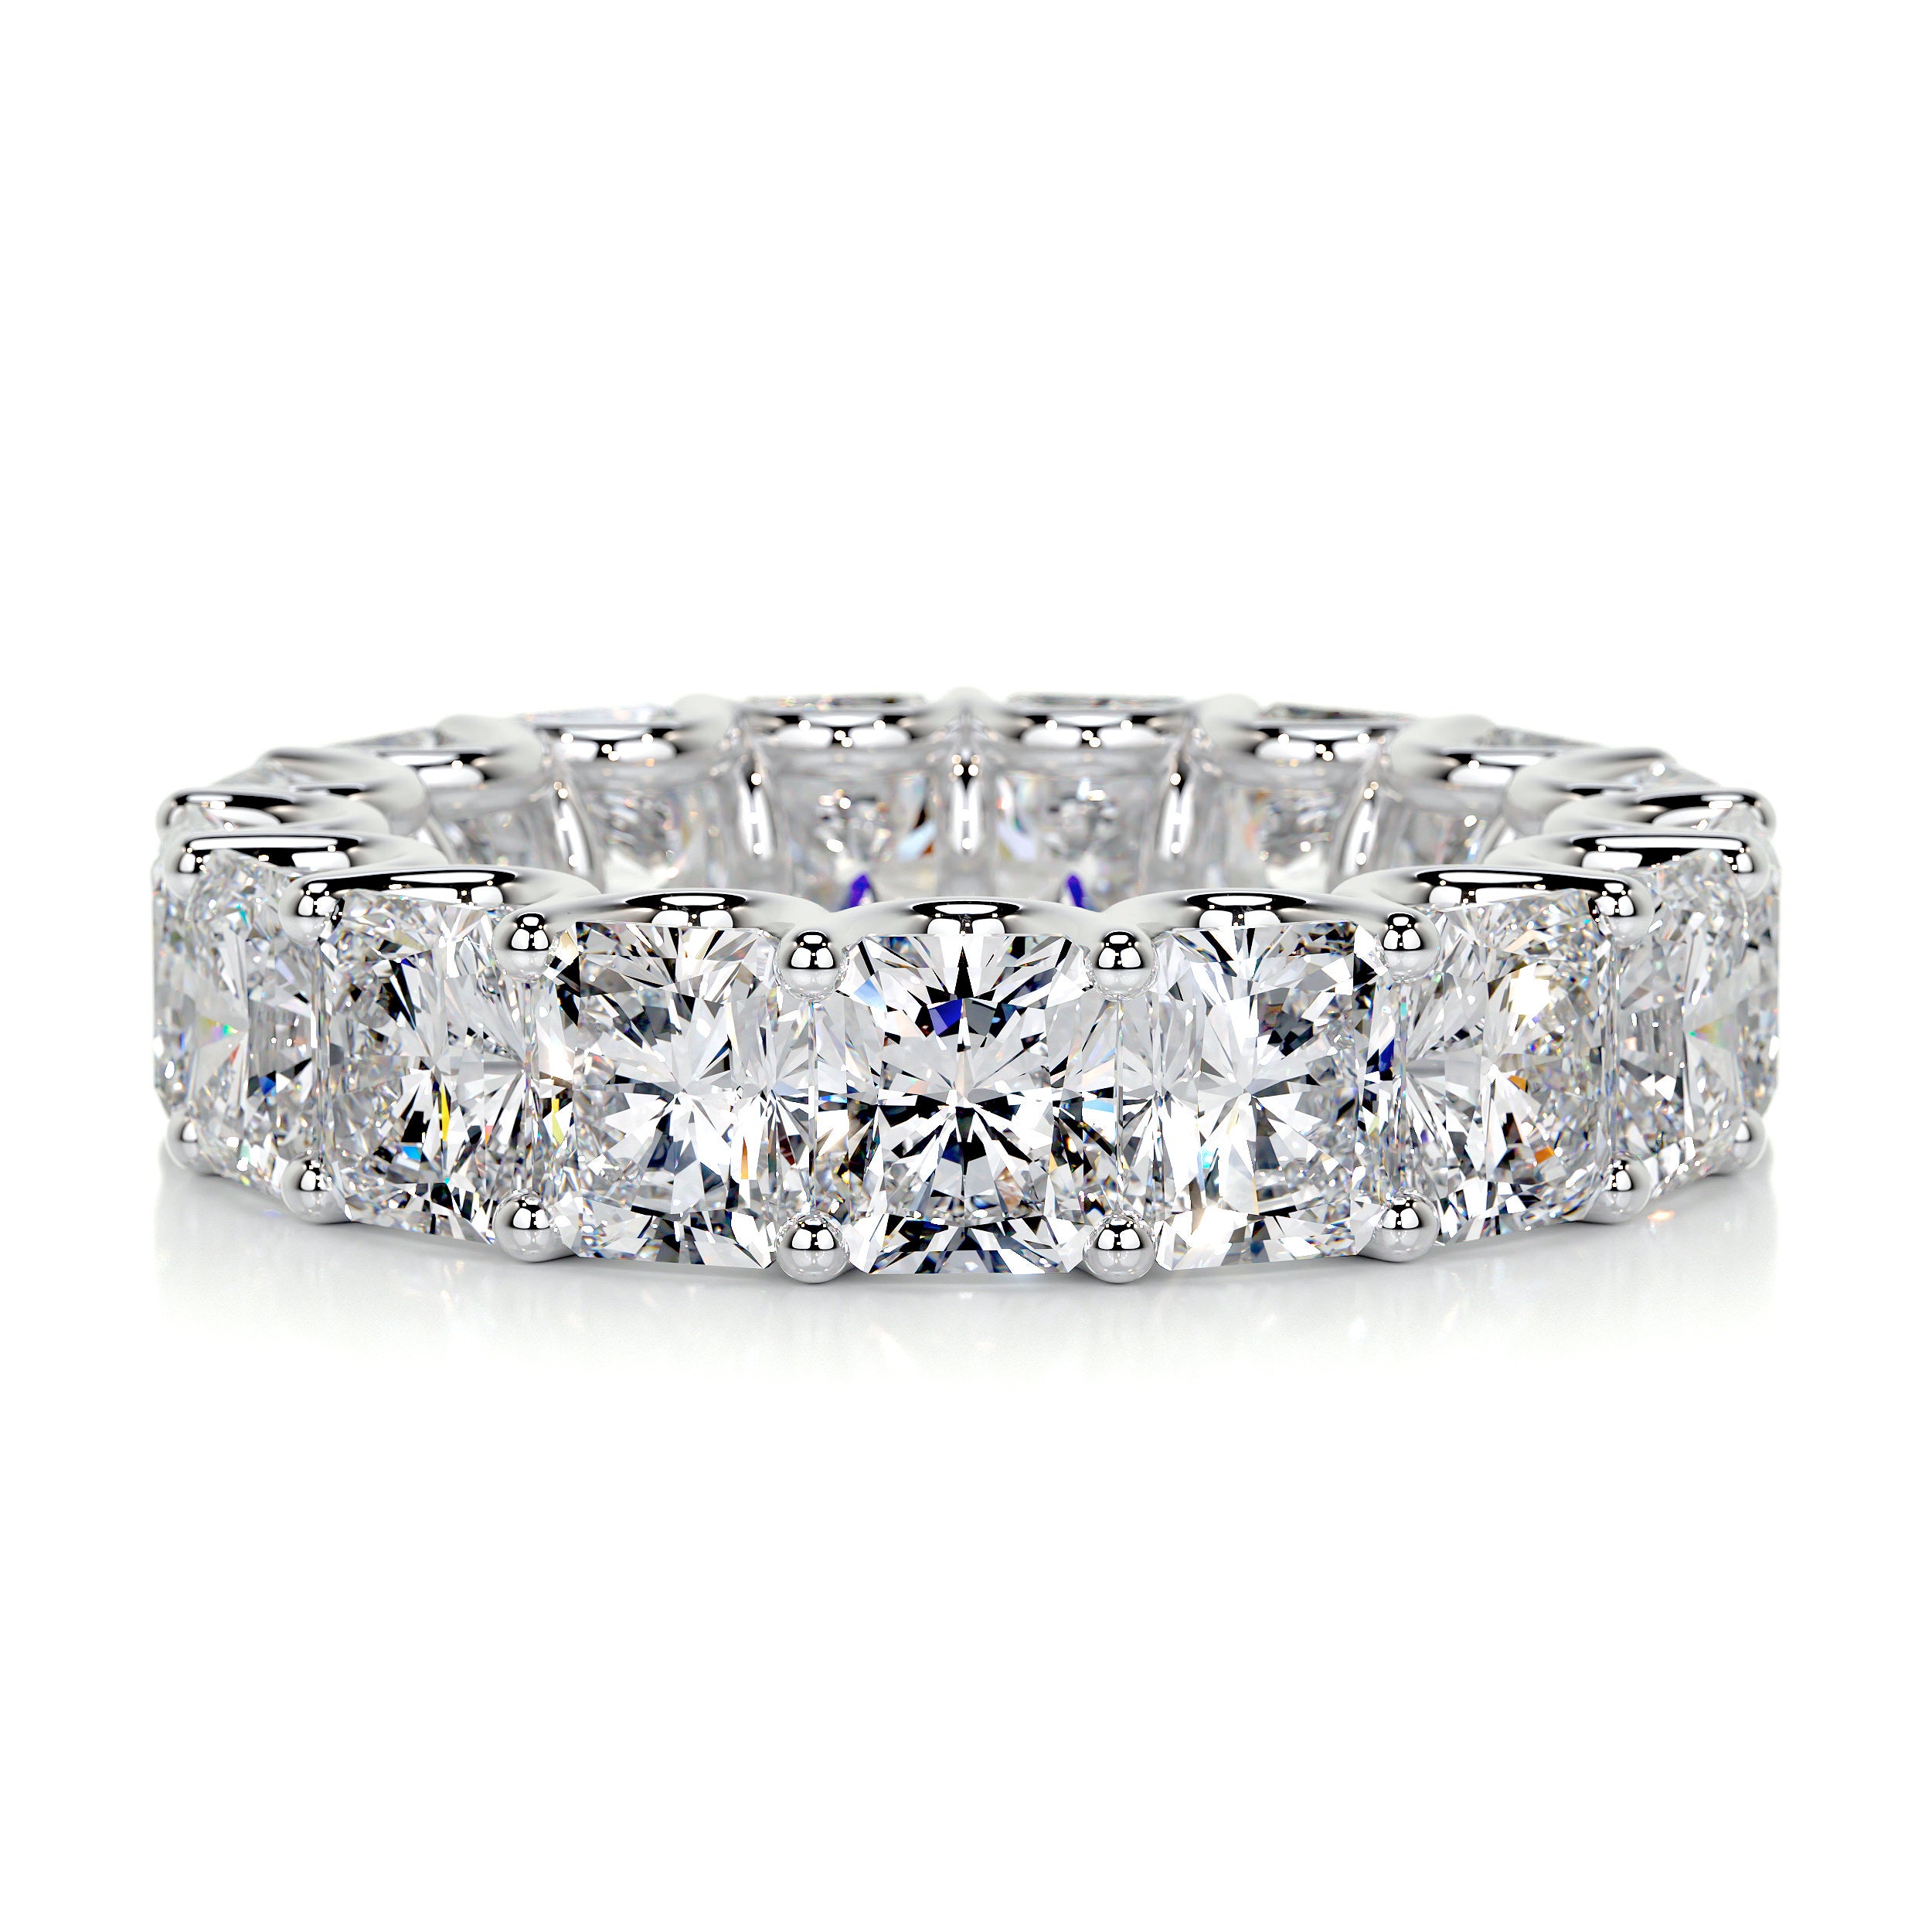 Andi Eternity Wedding Ring - 14K White Gold